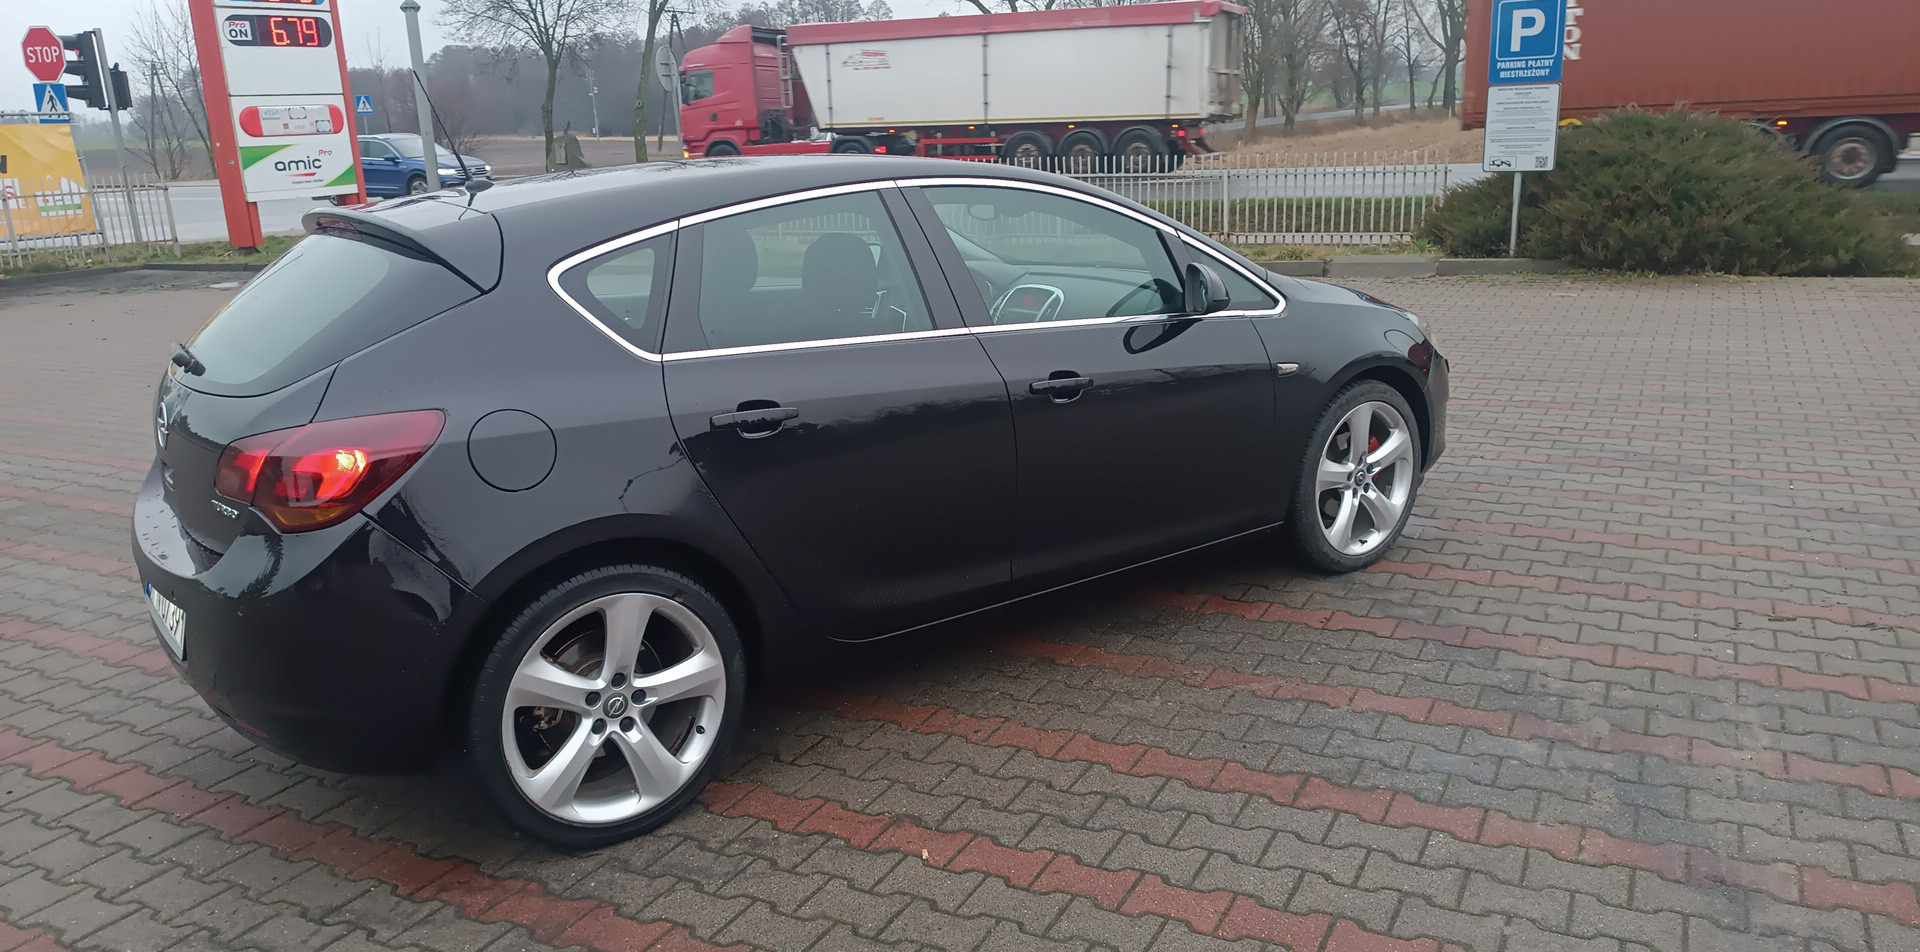 Opel Astra j 1.6 turbo super:)